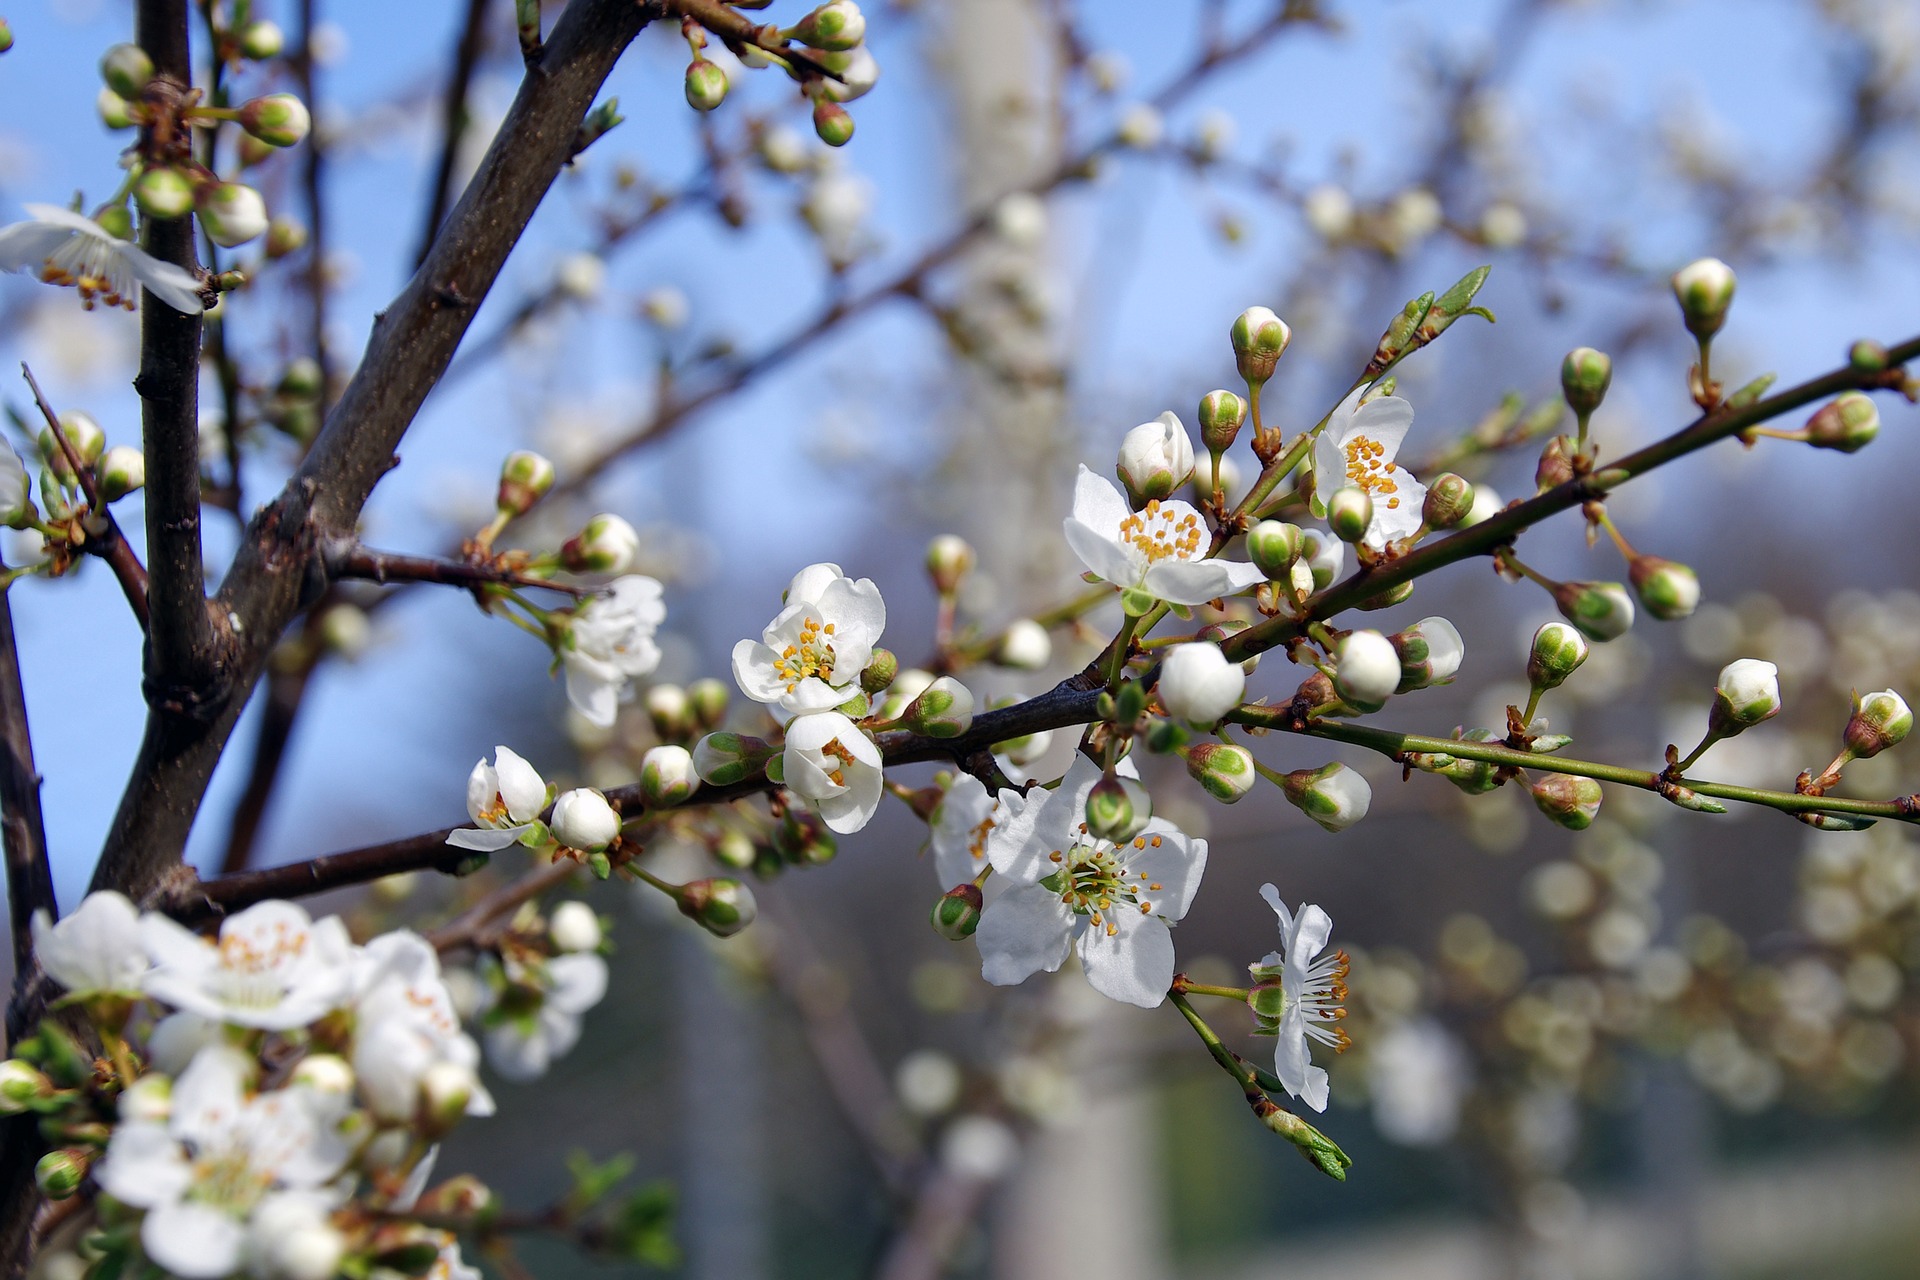 <h1>Květy trnky obecné <i>(Prunus spinosa)</i></h1><br />
Fotografie zachycuje bílé květy a poupata trnky na neolistěné větvičce. Květ se skládá z pěti korunních plátků, uprostřed jsou nápadné oranžové tyčinky.